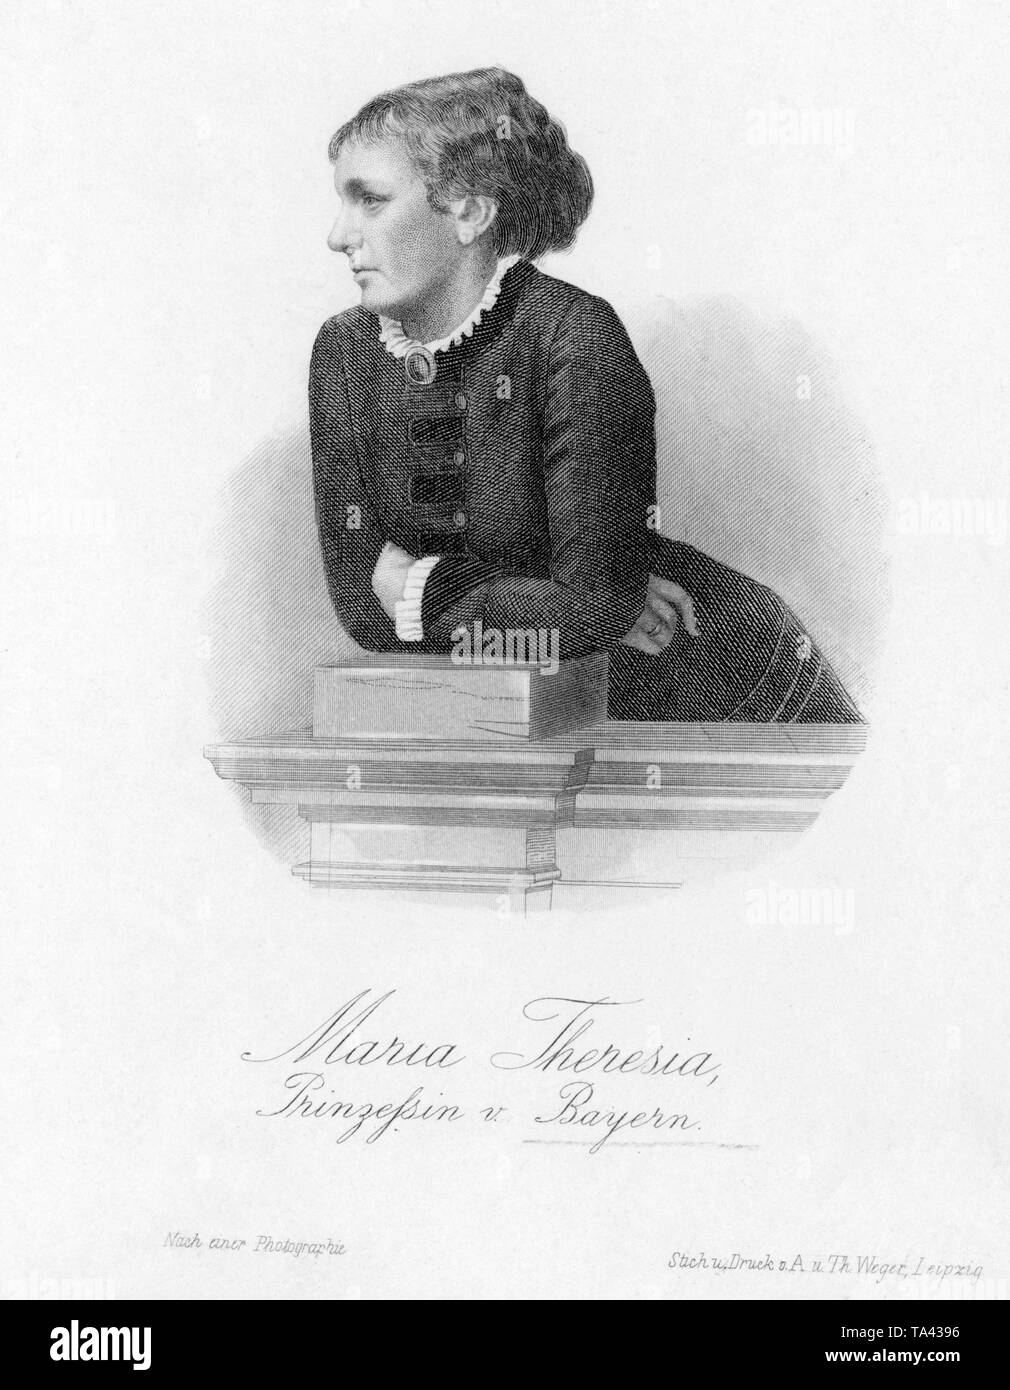 Questa fotografia, dopo una incisione da agosto e Th. Wege in Leipzig, mostra Maria Theresa, moglie del principe di Ludwig III di Baviera, l'Arciduchessa d Austria-Este e principessa di Modena e la Baviera. Foto non datata, presumibilmente nel 1880. Foto Stock